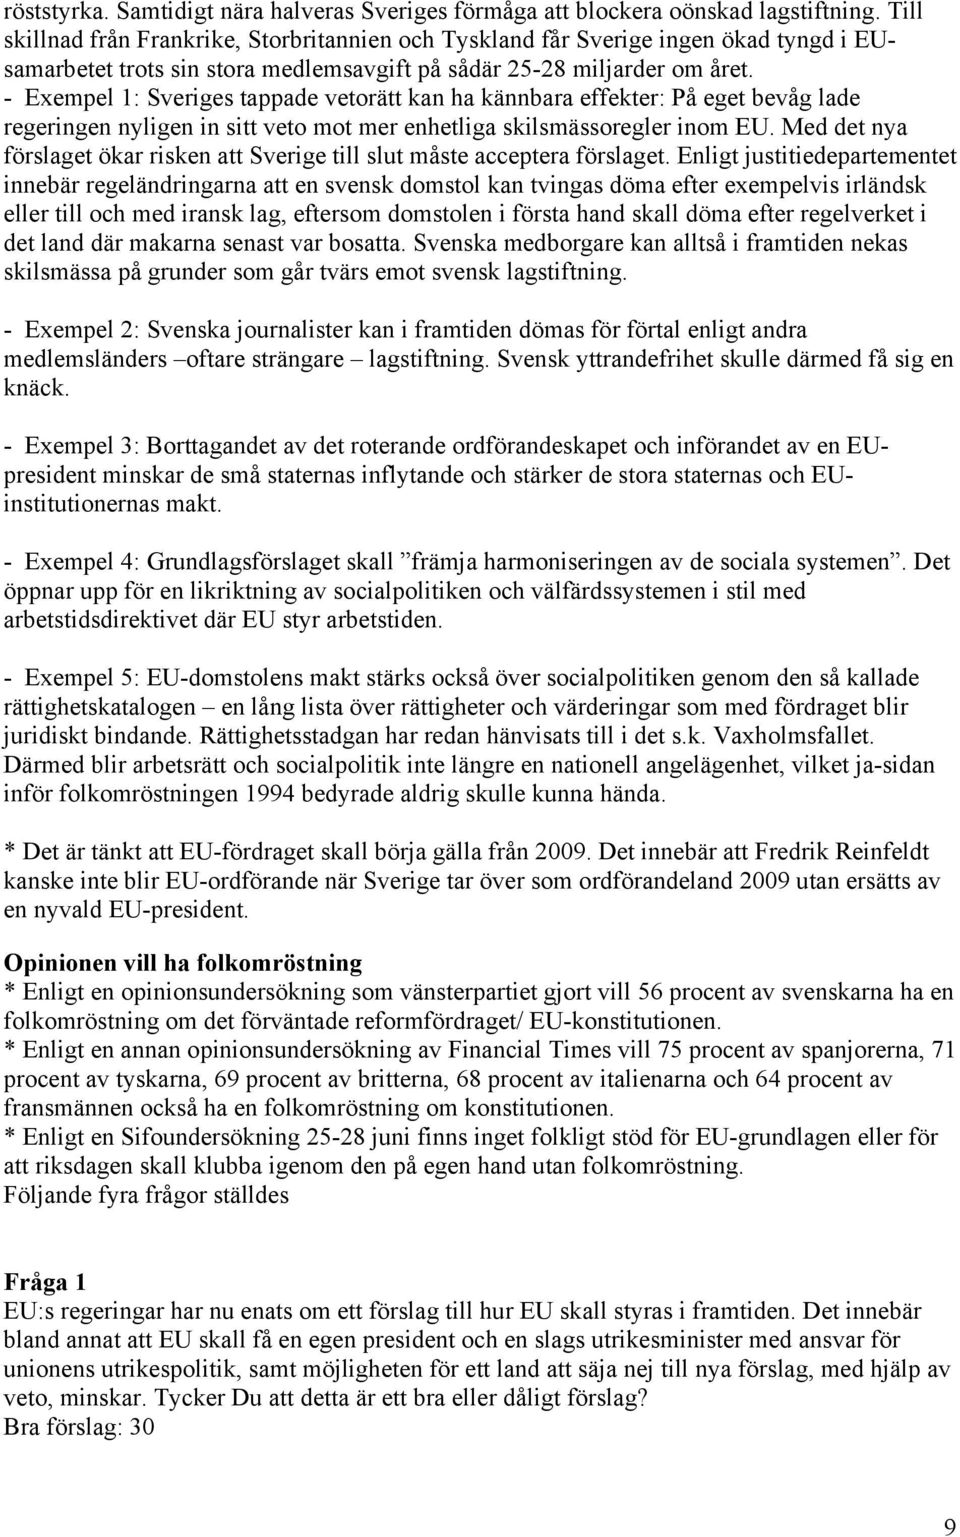 - Exempel 1: Sveriges tappade vetorätt kan ha kännbara effekter: På eget bevåg lade regeringen nyligen in sitt veto mot mer enhetliga skilsmässoregler inom EU.